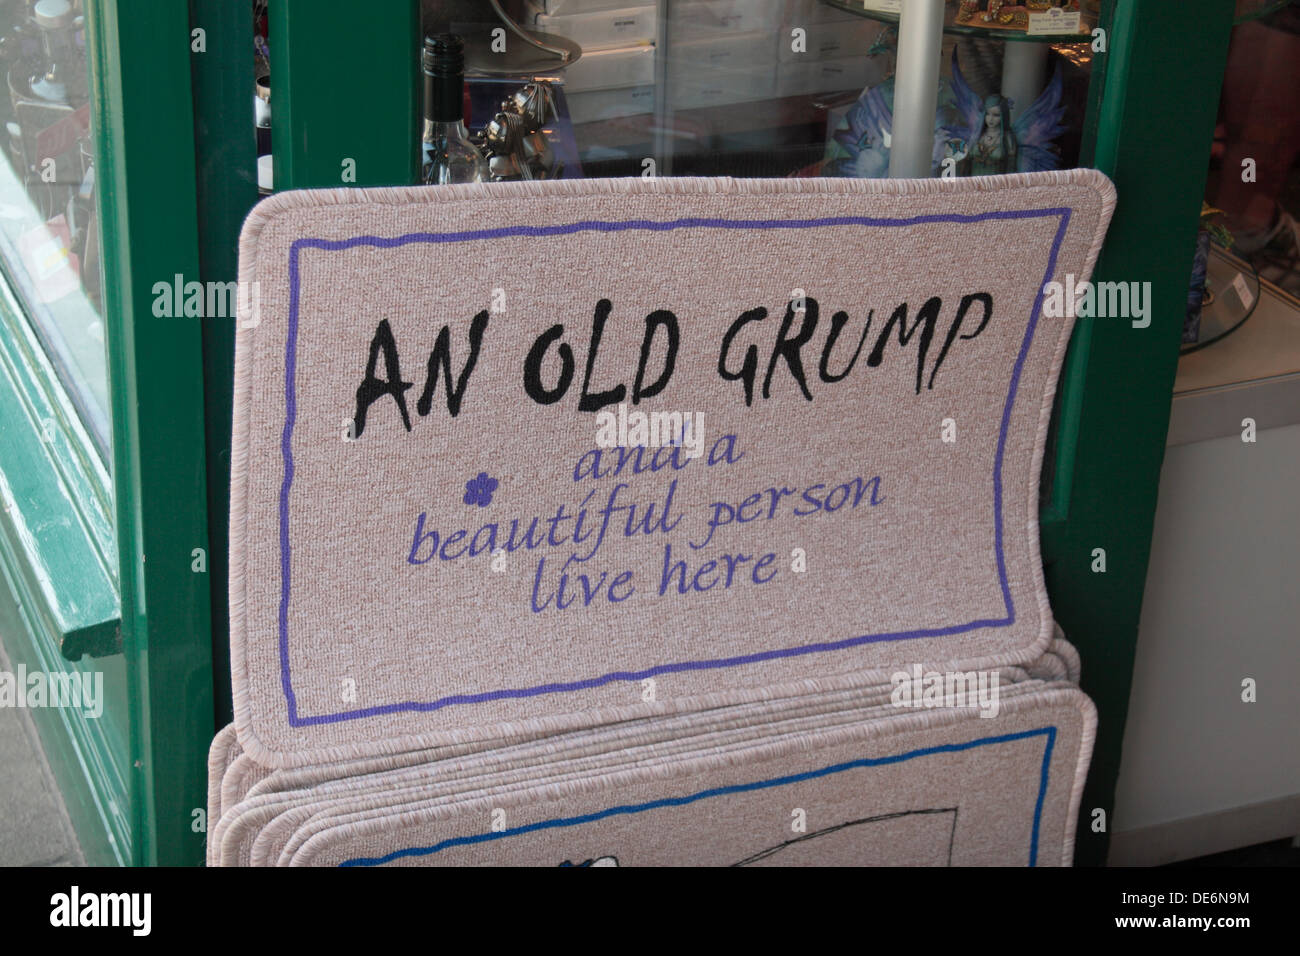 Puerta delantera divertida alfombrilla para la venta fuera de una tienda en Lyndhurst, New Forest, Reino Unido. "Un viejo Grump y una bella persona vivir aquí". Foto de stock